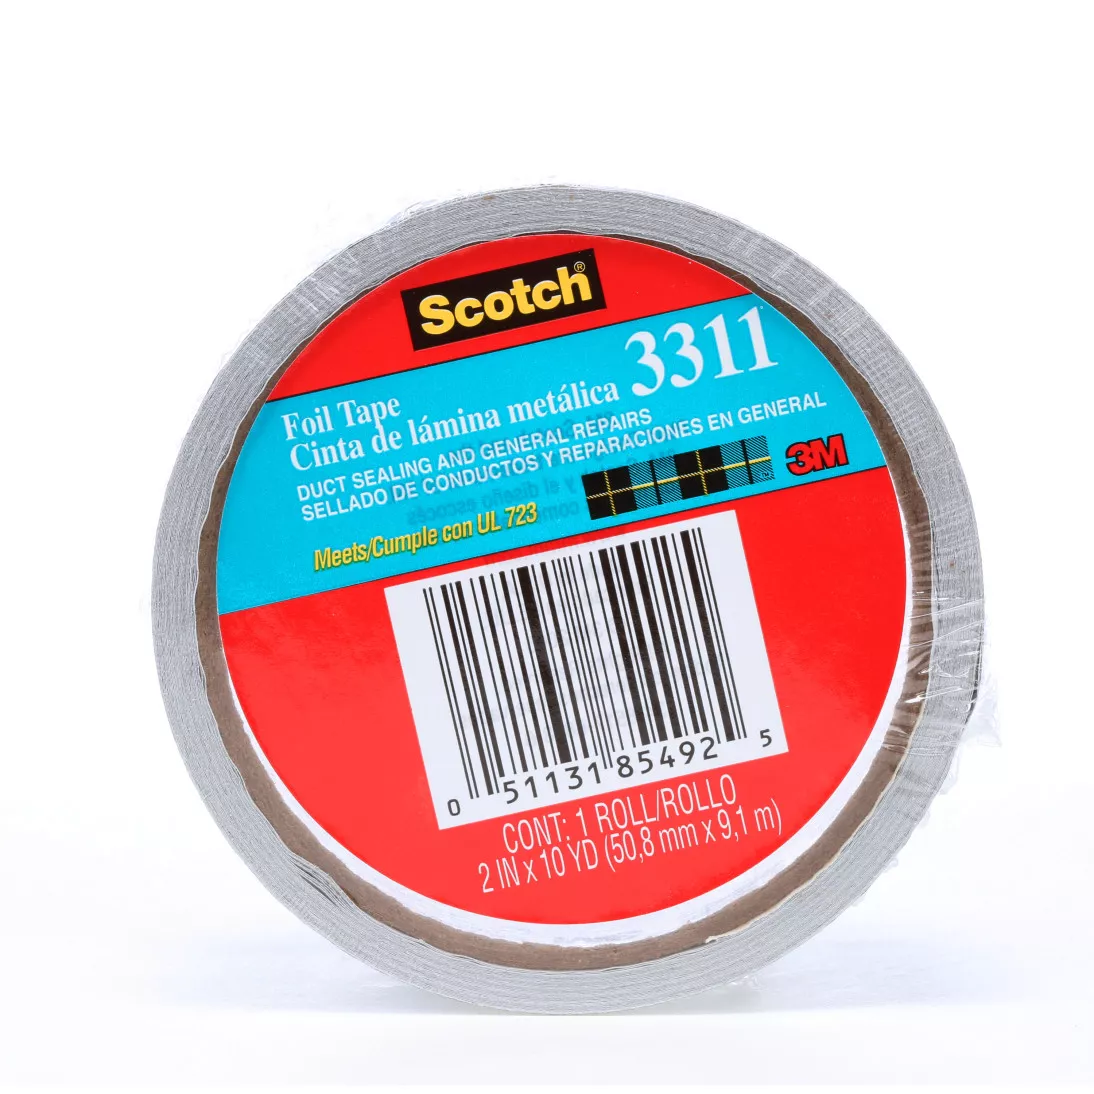 Scotch® Foil Tape 3311, Silver, 2 in x 10 yd, 3.6 mil, 24 rolls per case